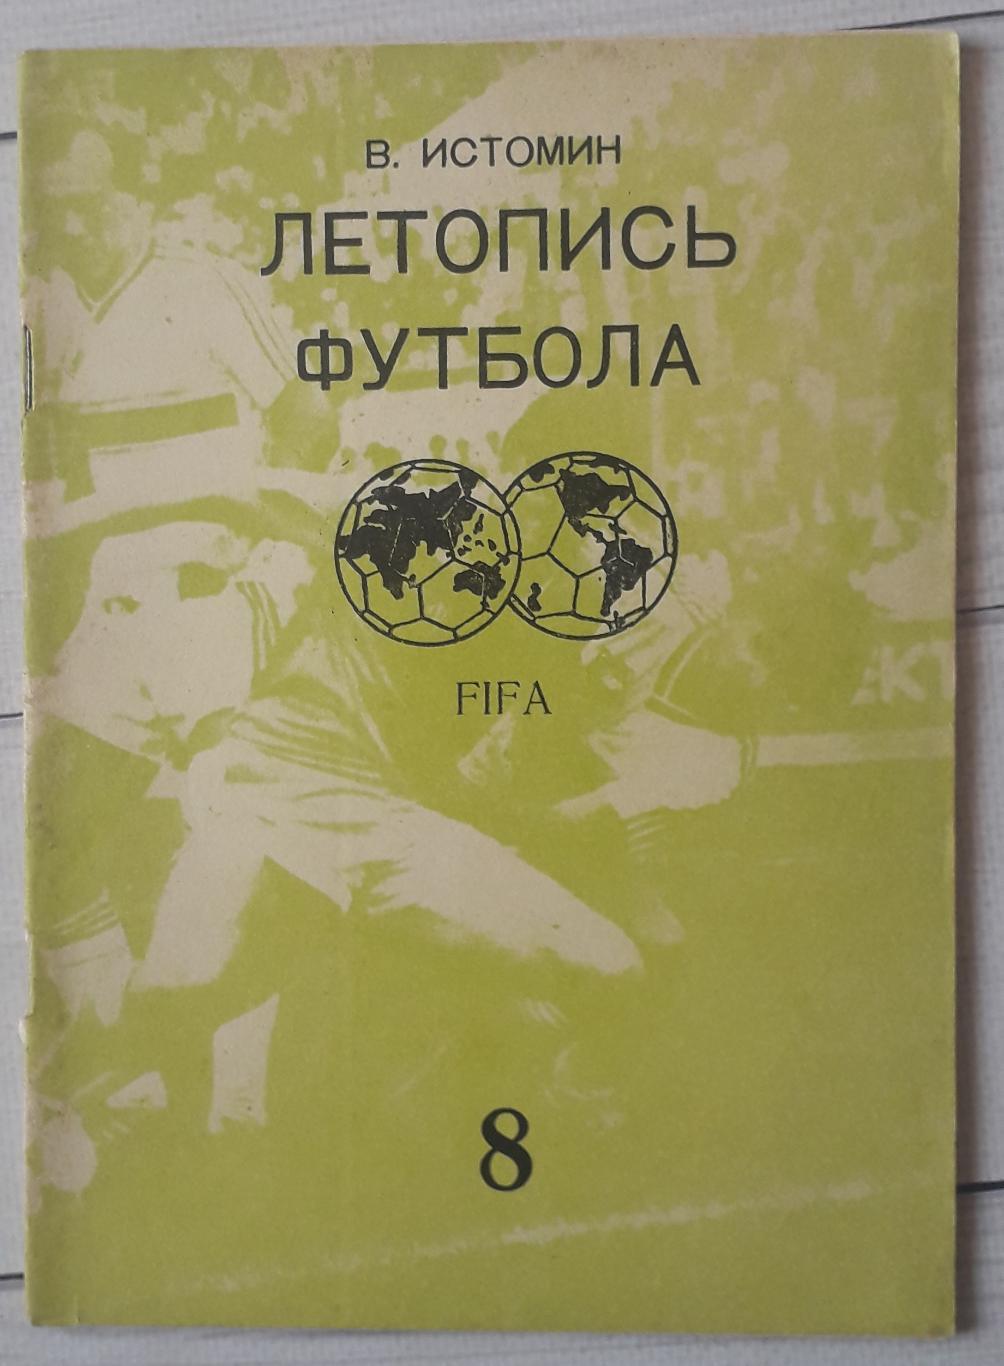 Истомин - Летопись футбола. часть 8 (1969-1972 гг)